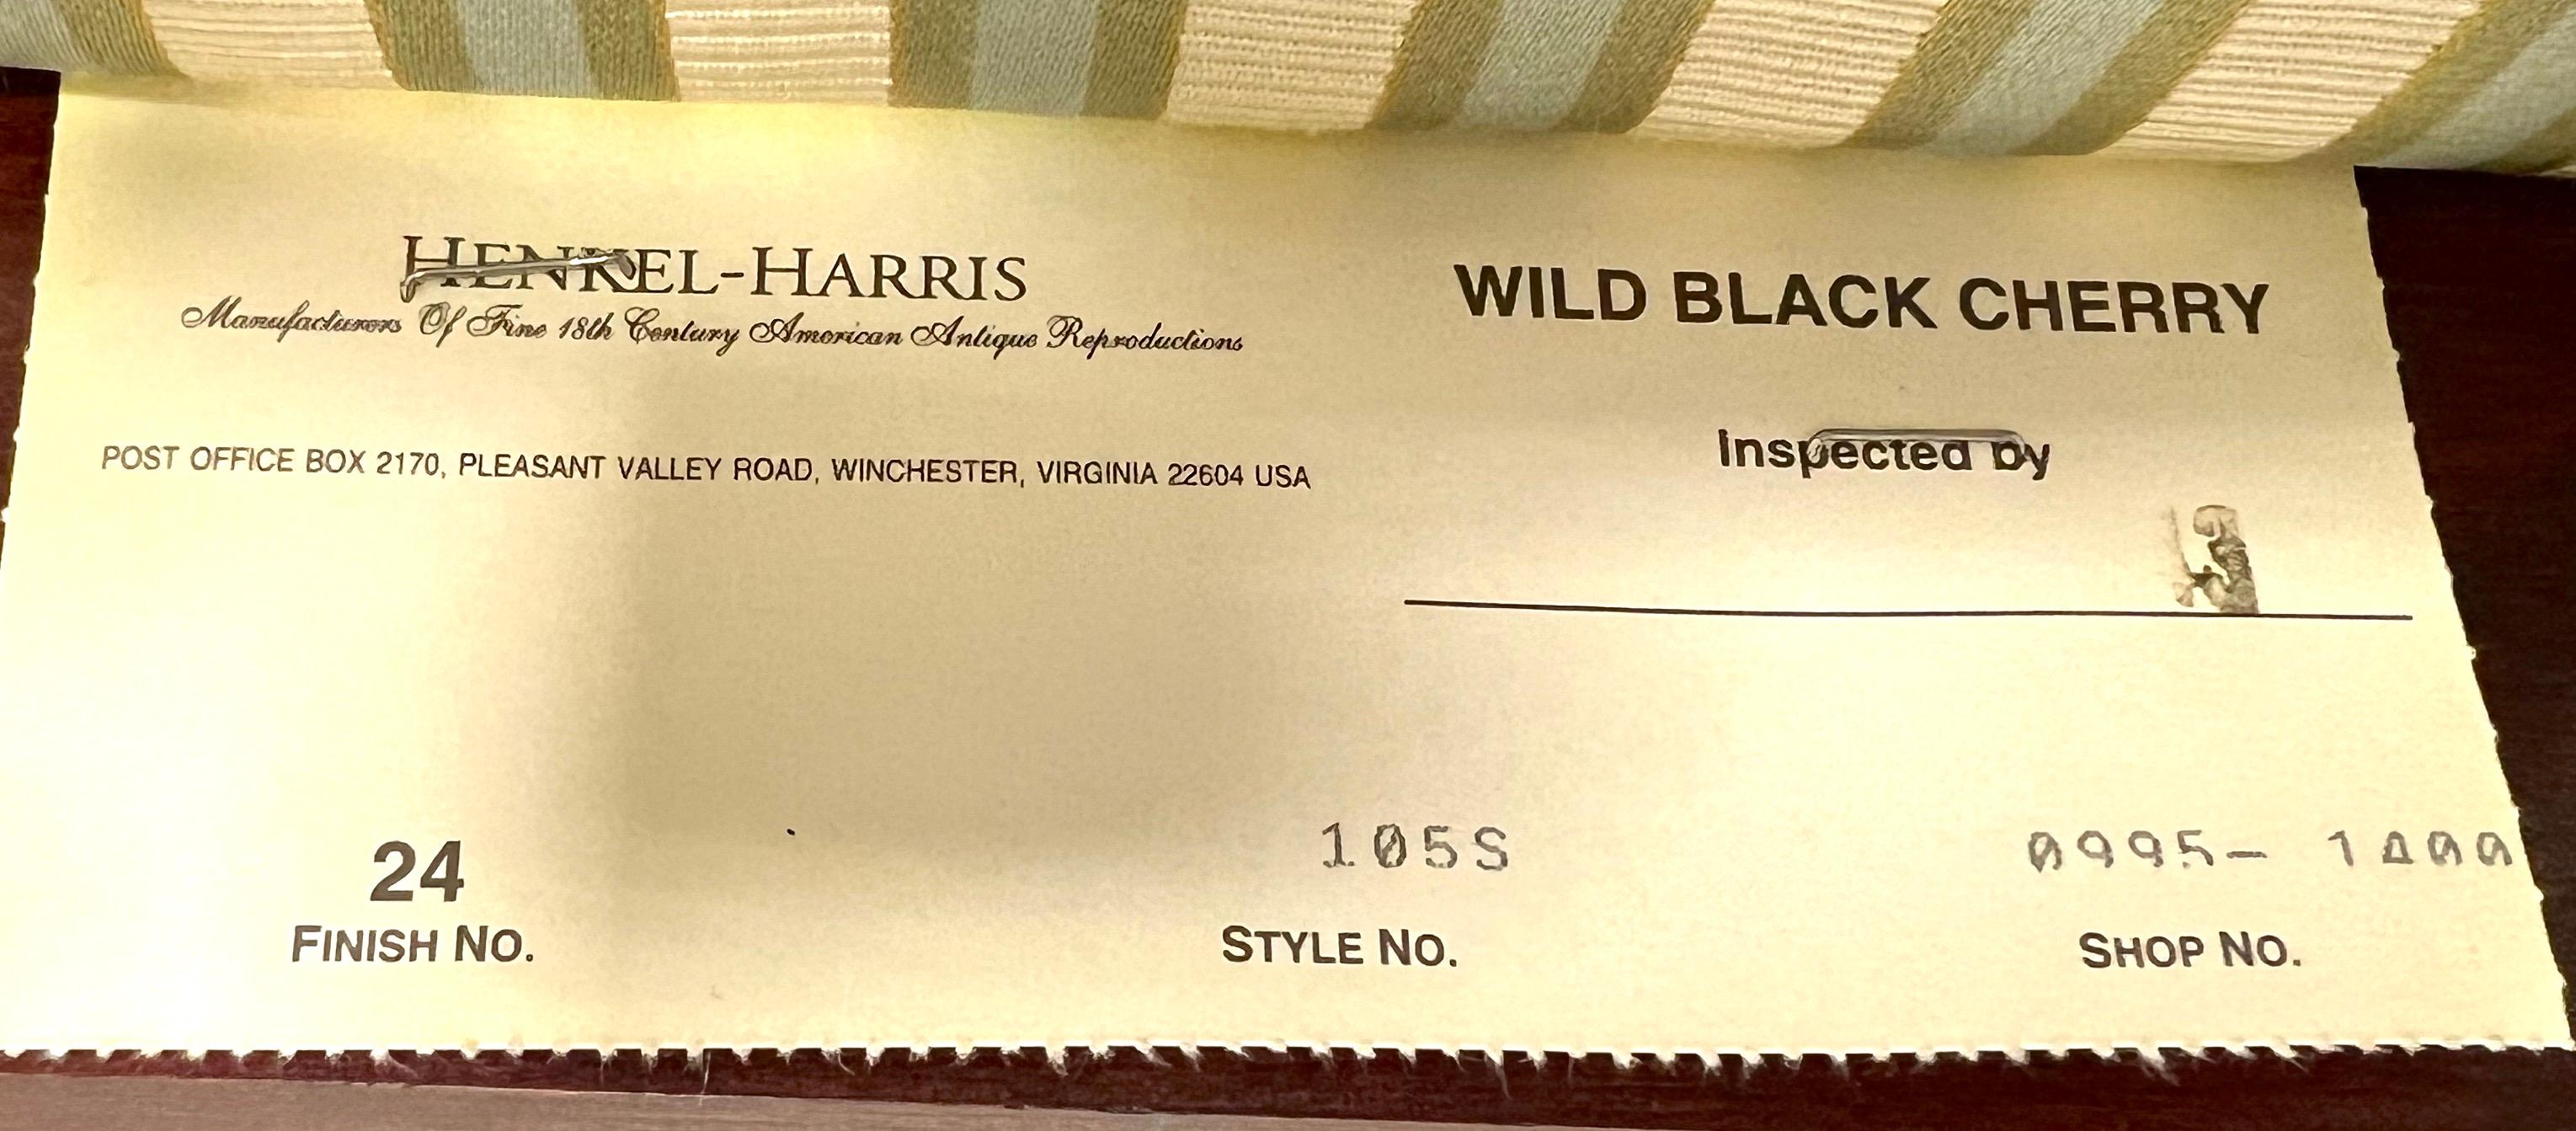 HENKEL HARRIS 105S 24 Wild Black Cherry Queen Anne Dining Side Chairs - Pair B 4